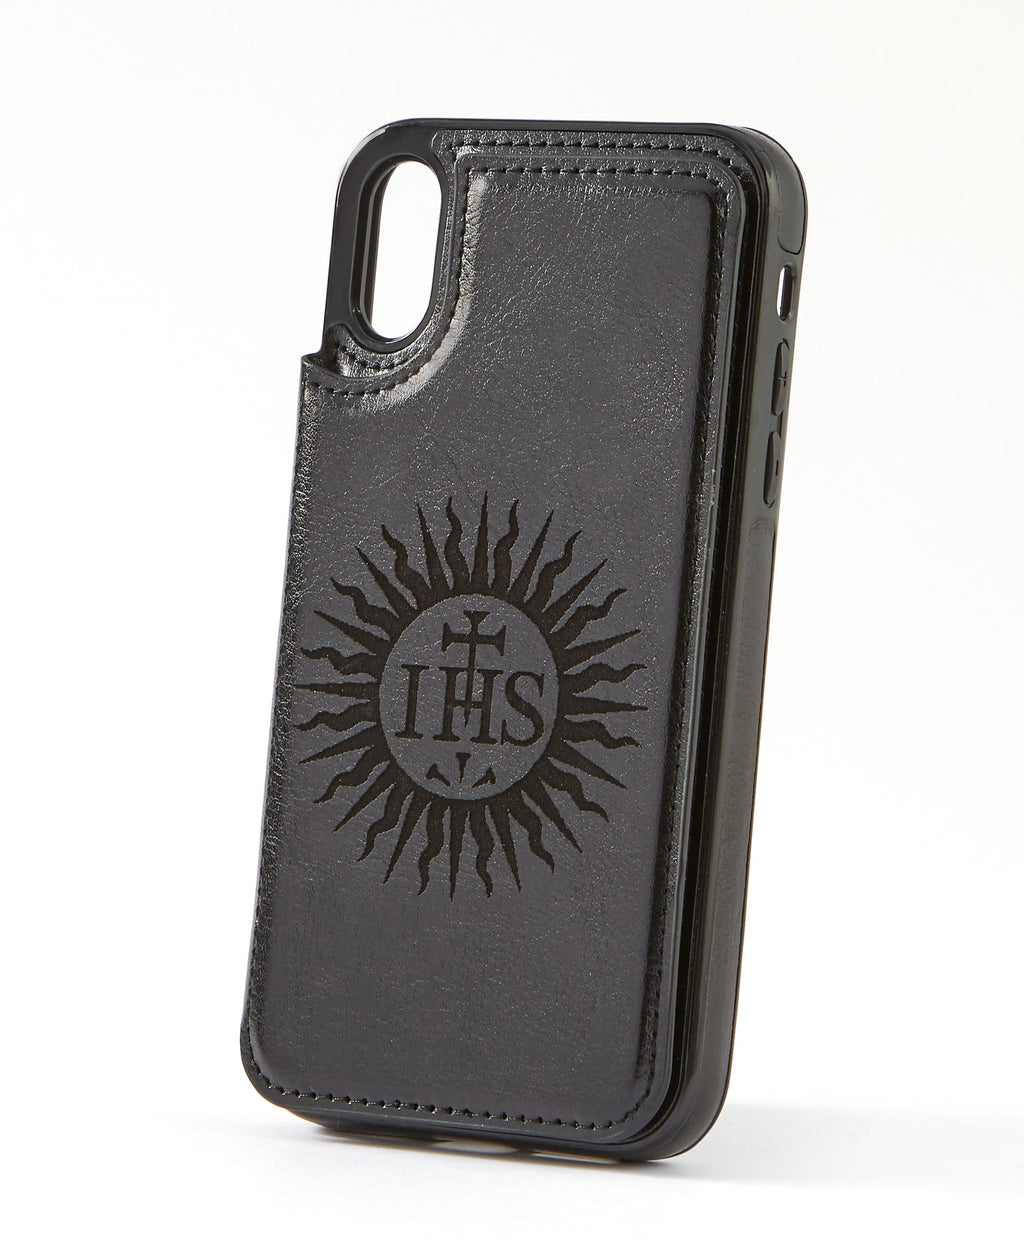 Sunburst Black Leather Wallet Case for iPhone XR